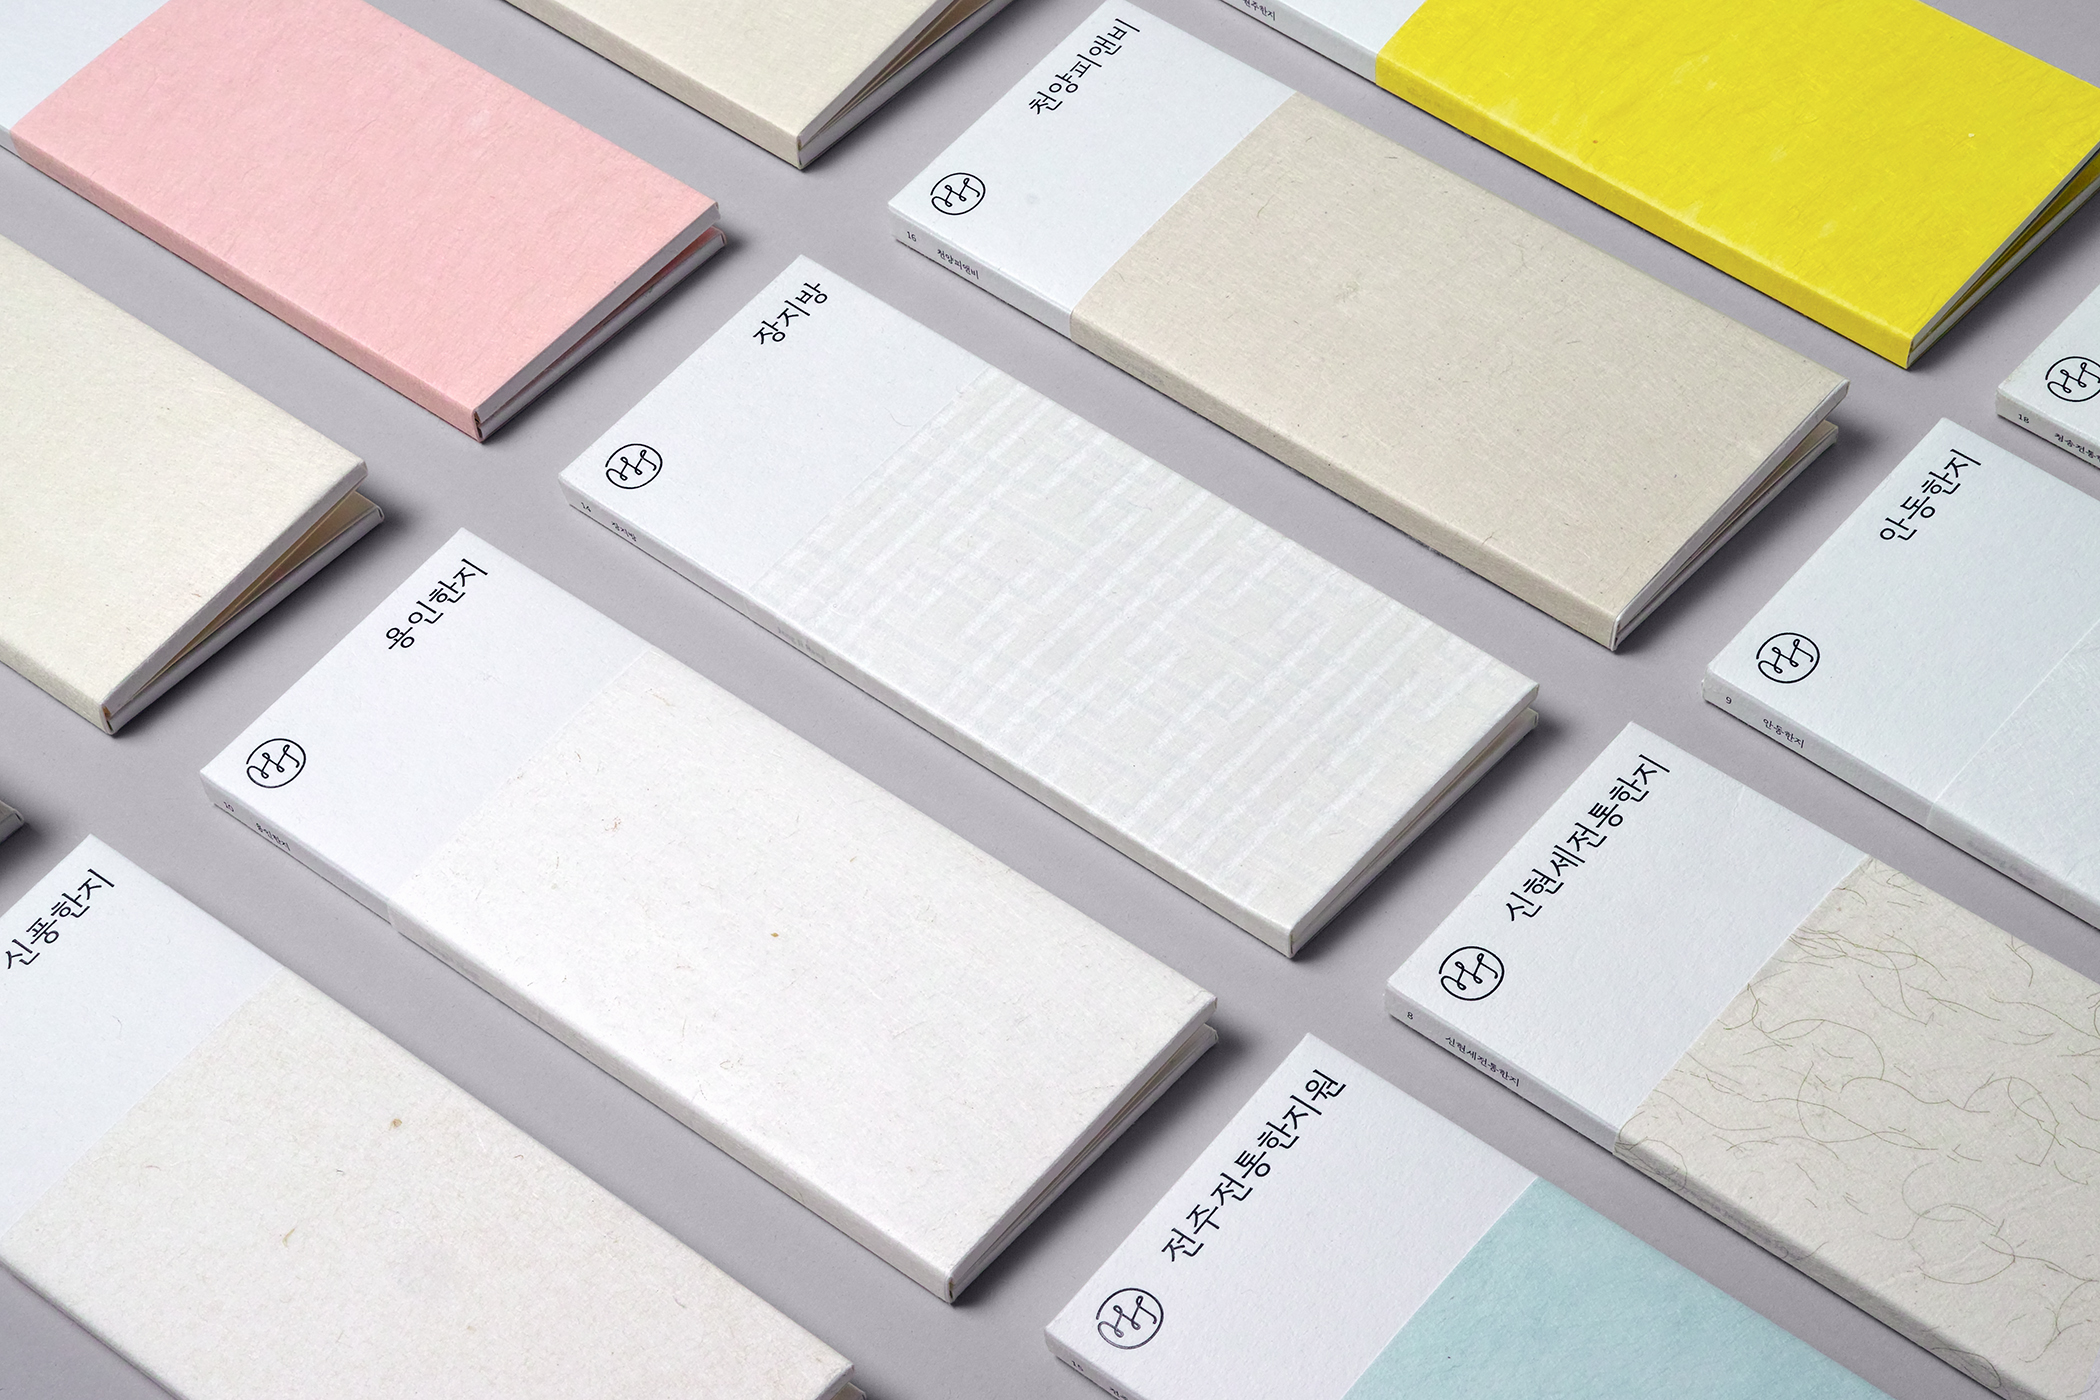 Paper sample booklets by Studio fnt for Korean paper brand Hanji